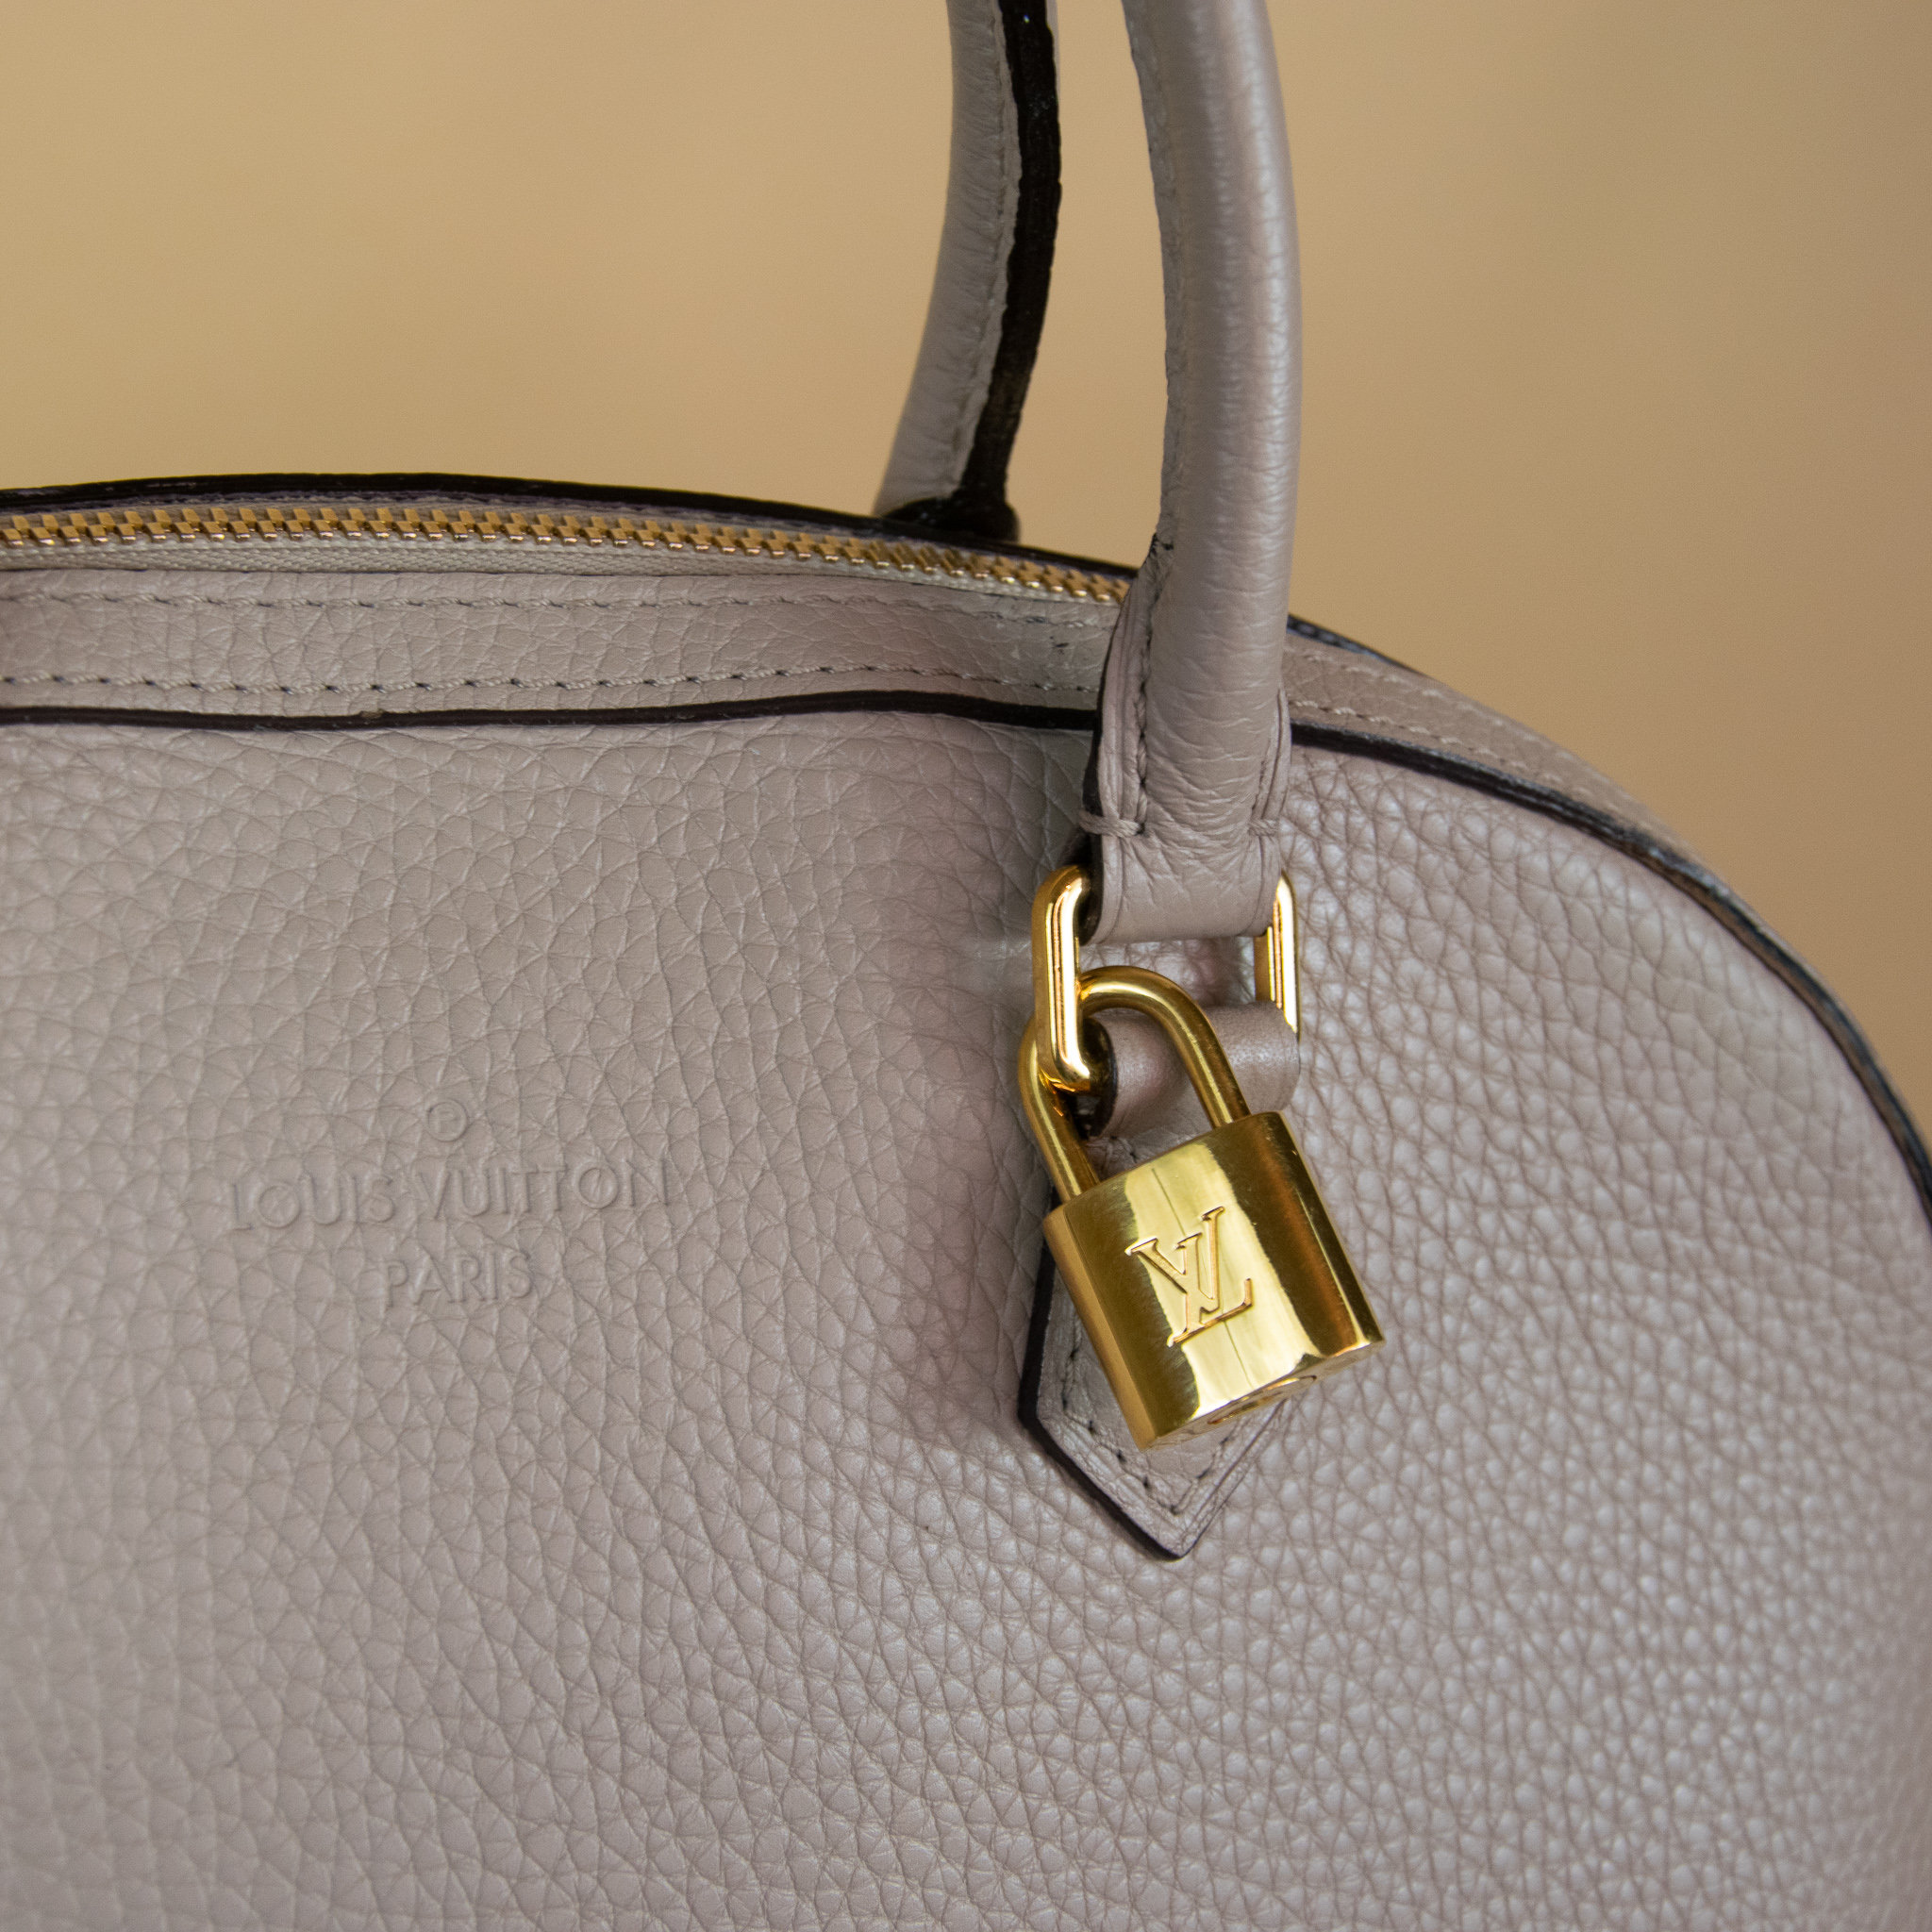 Louis Vuitton Sable Taurillon Leather Alma PM Farbe Galet